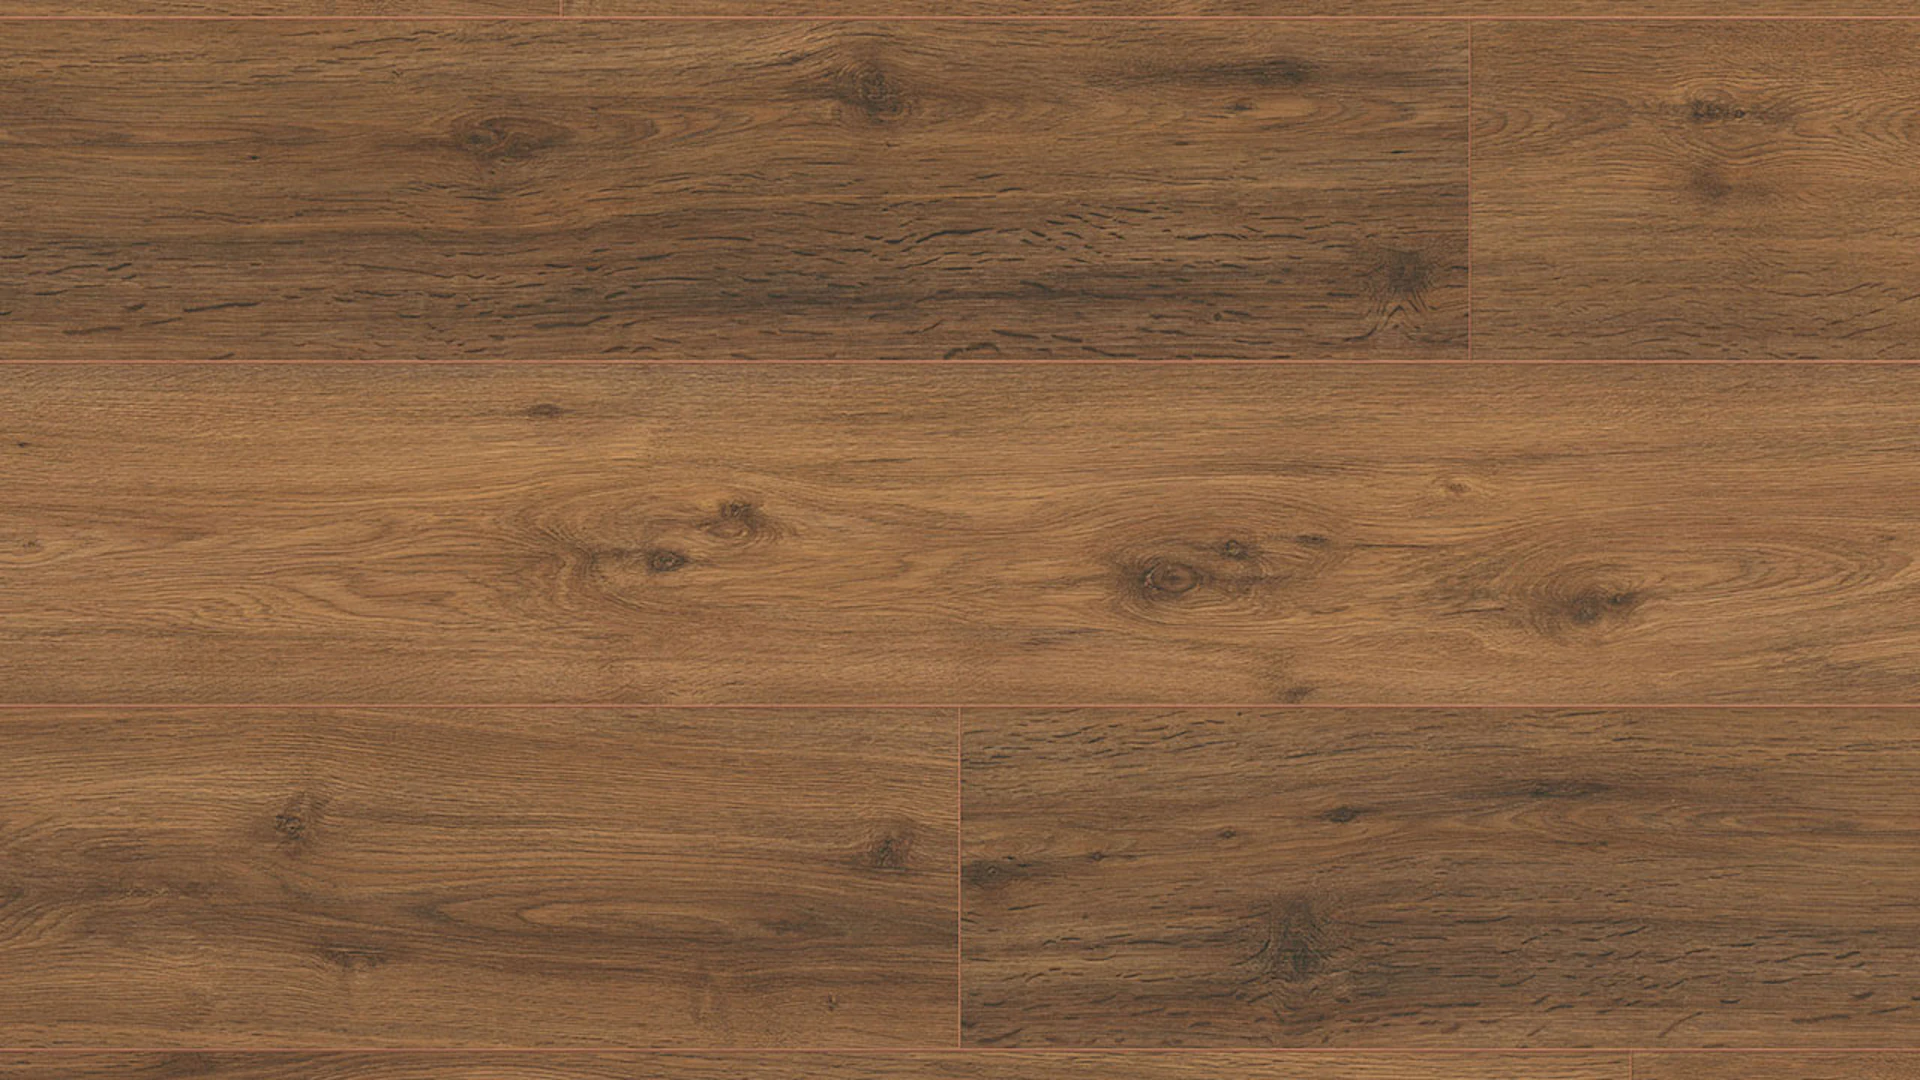 MEISTER Laminate flooring - MeisterDesign LD 150 Oak Chiemsee brown 6377